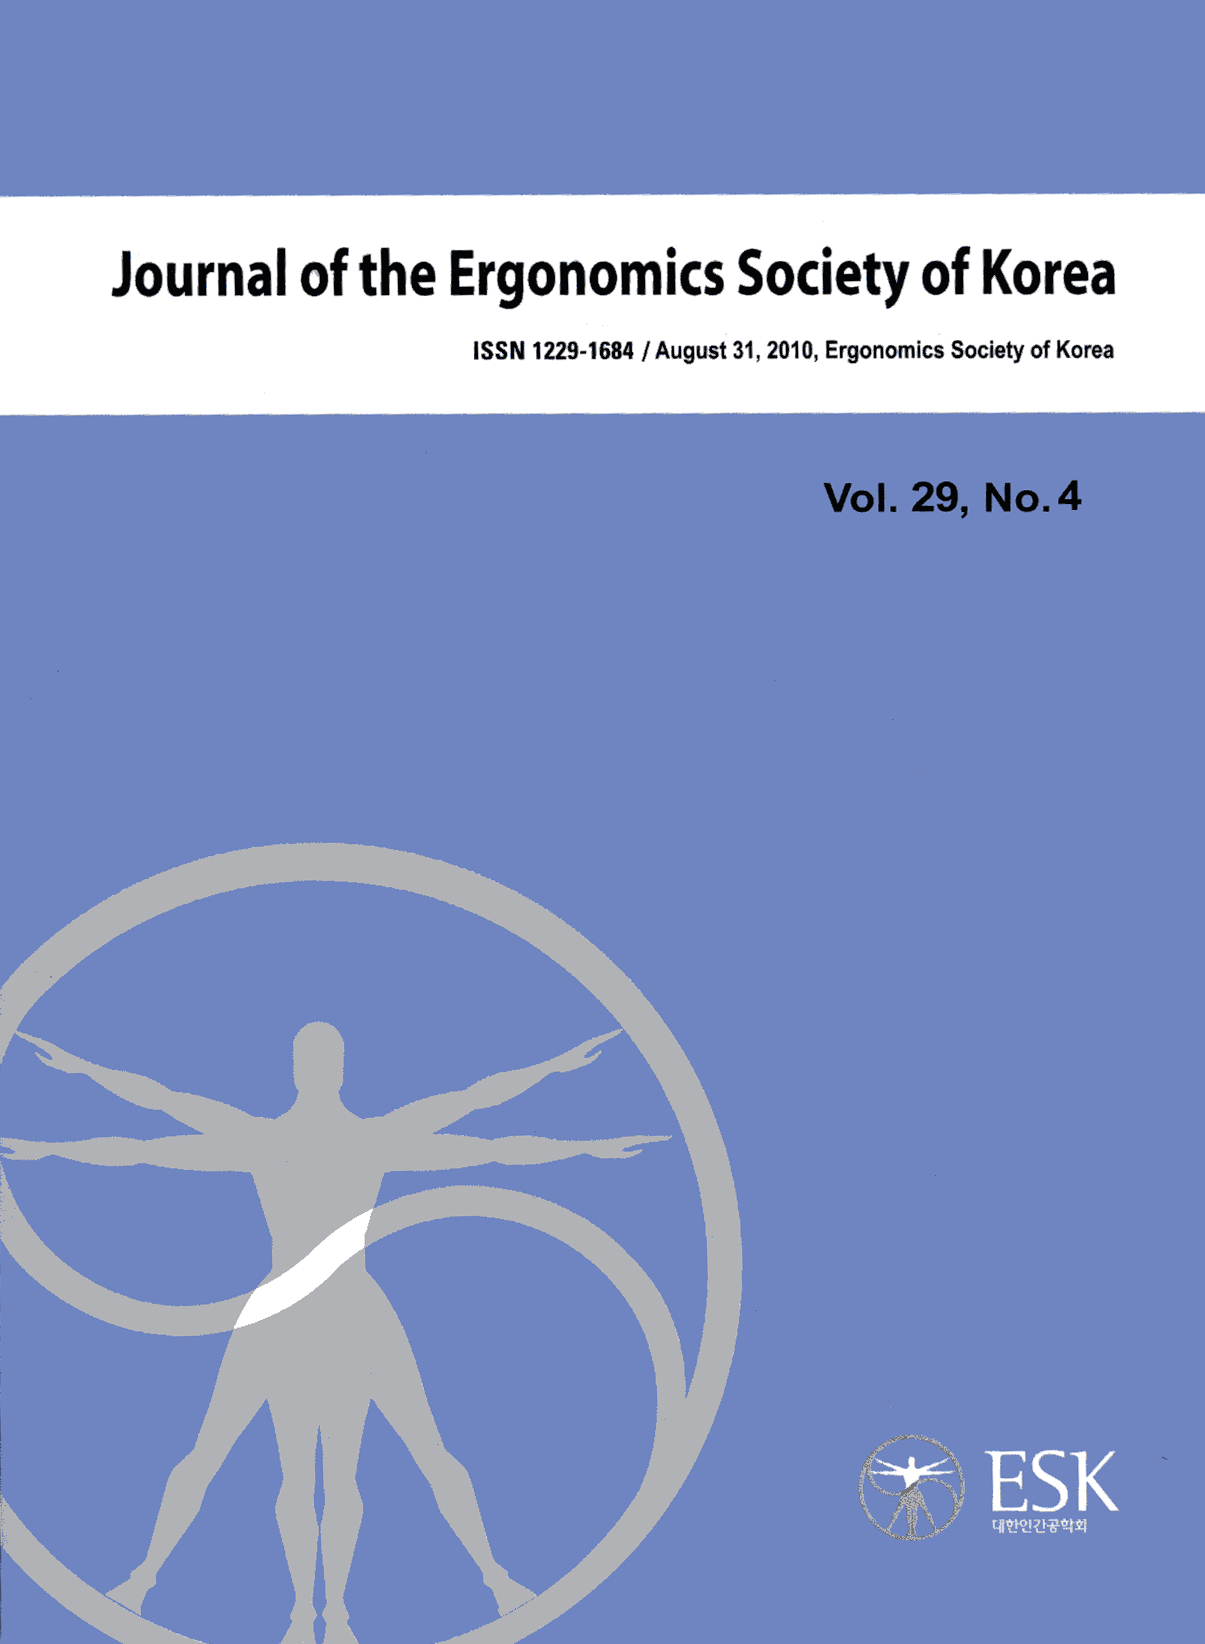 JESK Journal of the Ergonomics Society of Korea